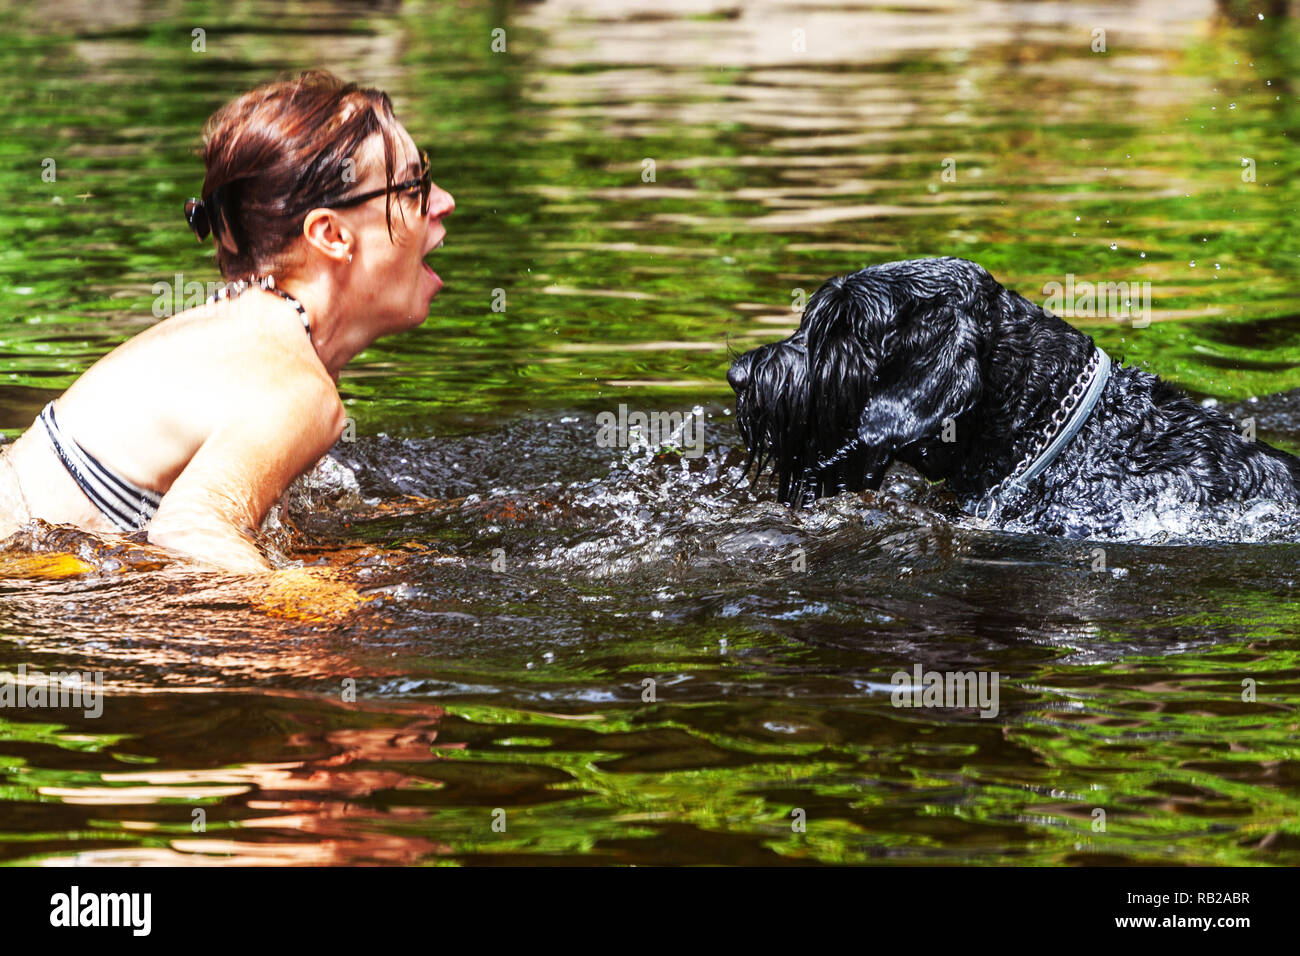 Donna e cane nero schnauzer in acqua, vacanze estive al fiume, donna cane Repubblica Ceca faccia a faccia Foto Stock